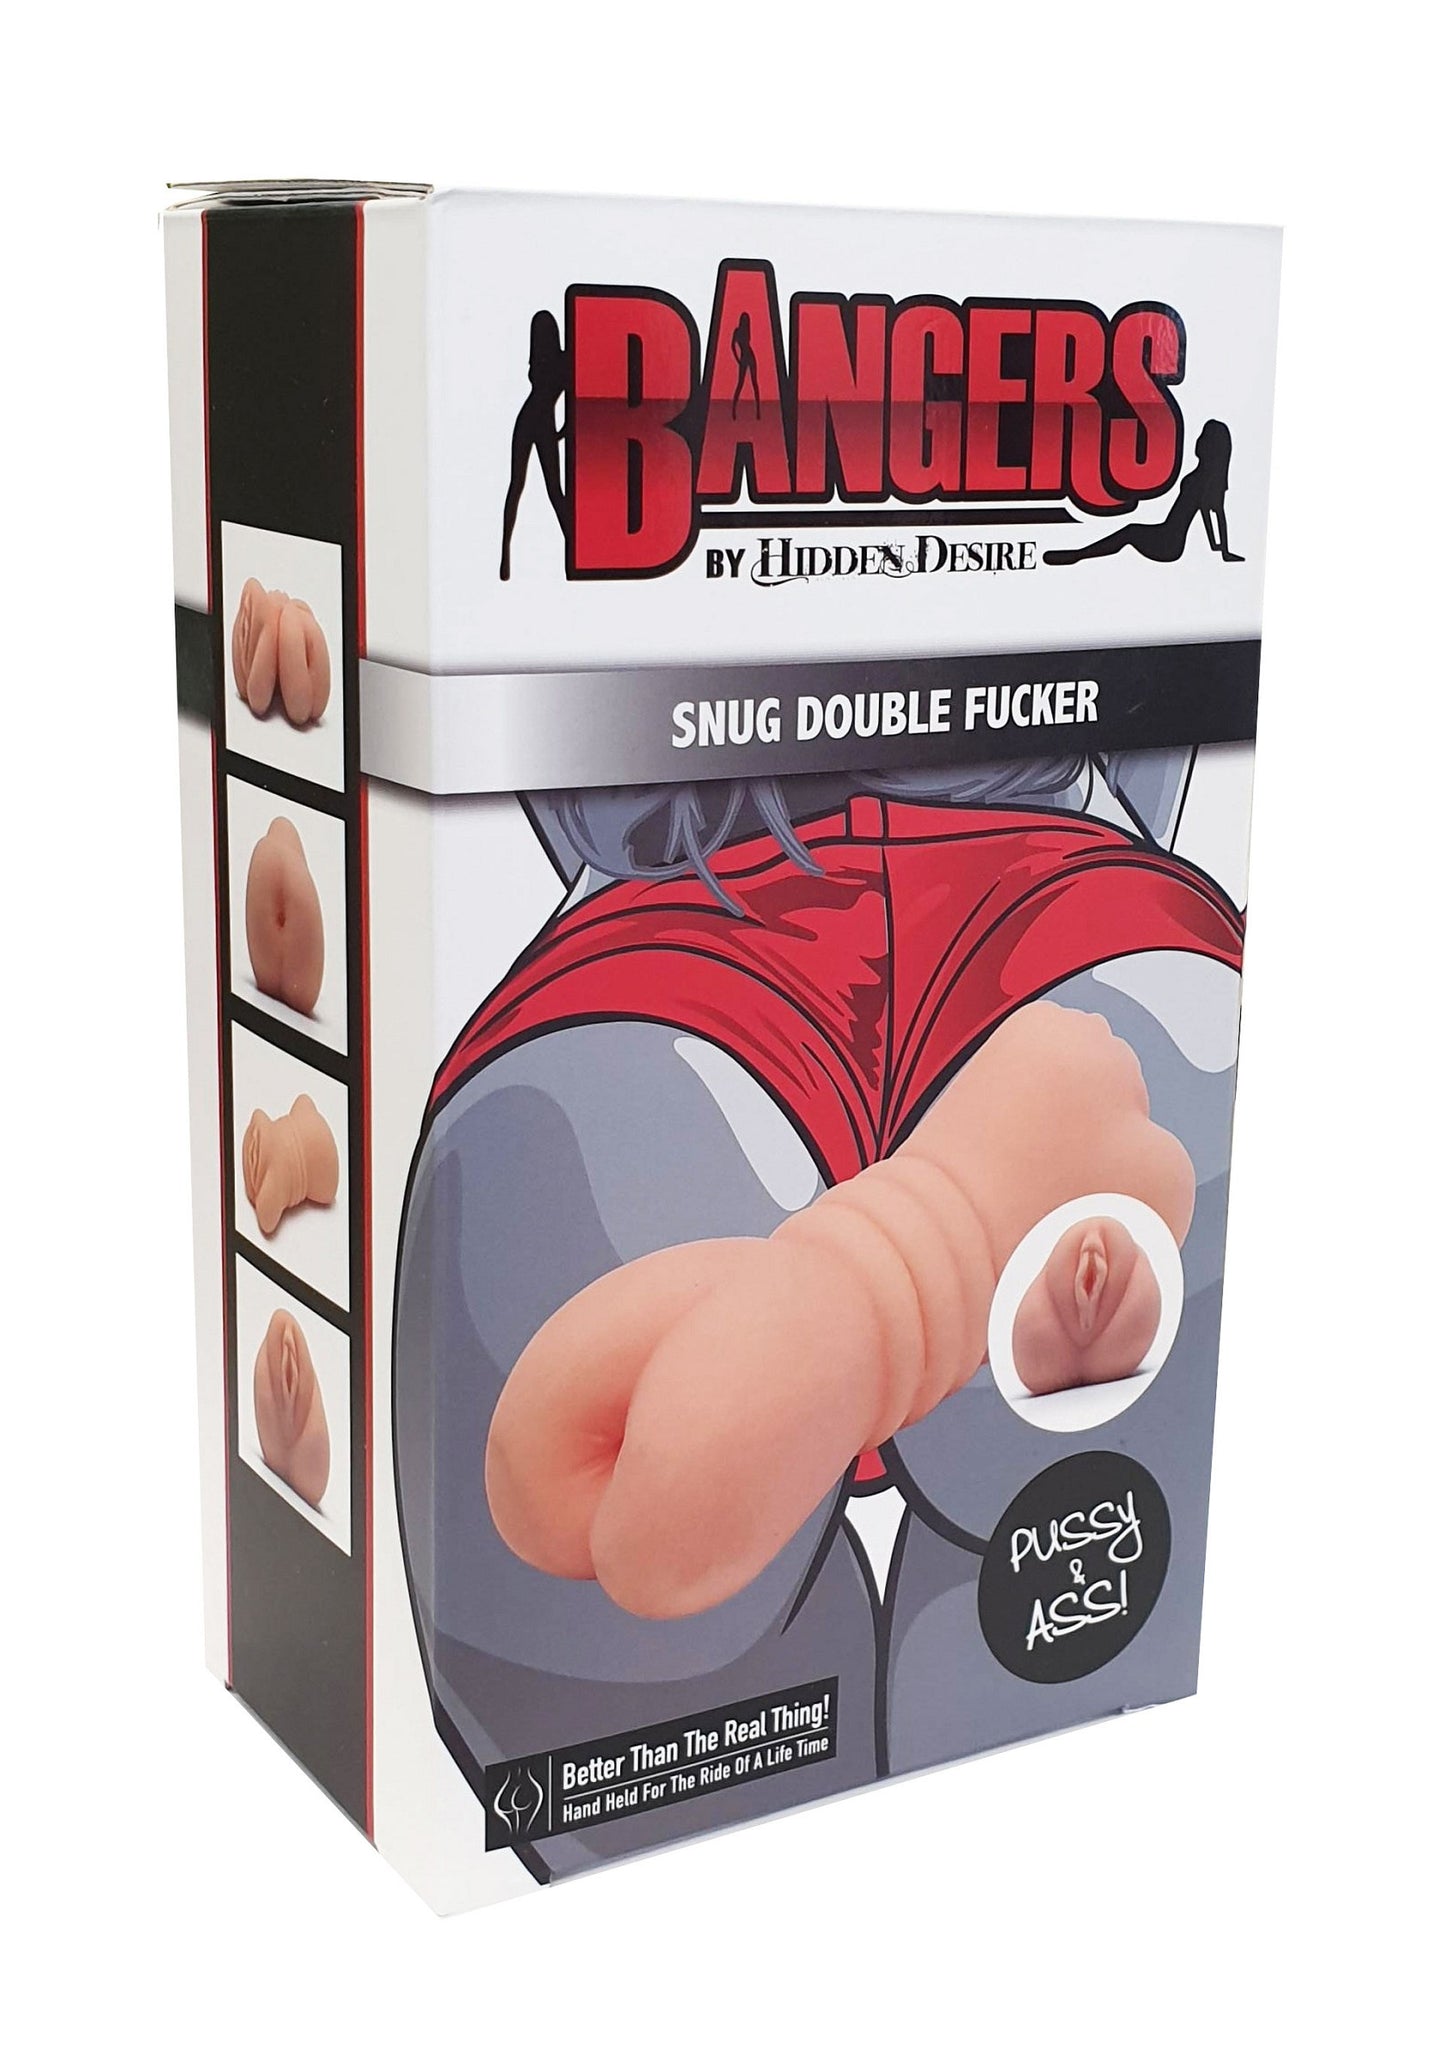 Hidden Desire Bangers Snug Double Fucker Pussy/Ass SKIN - 1